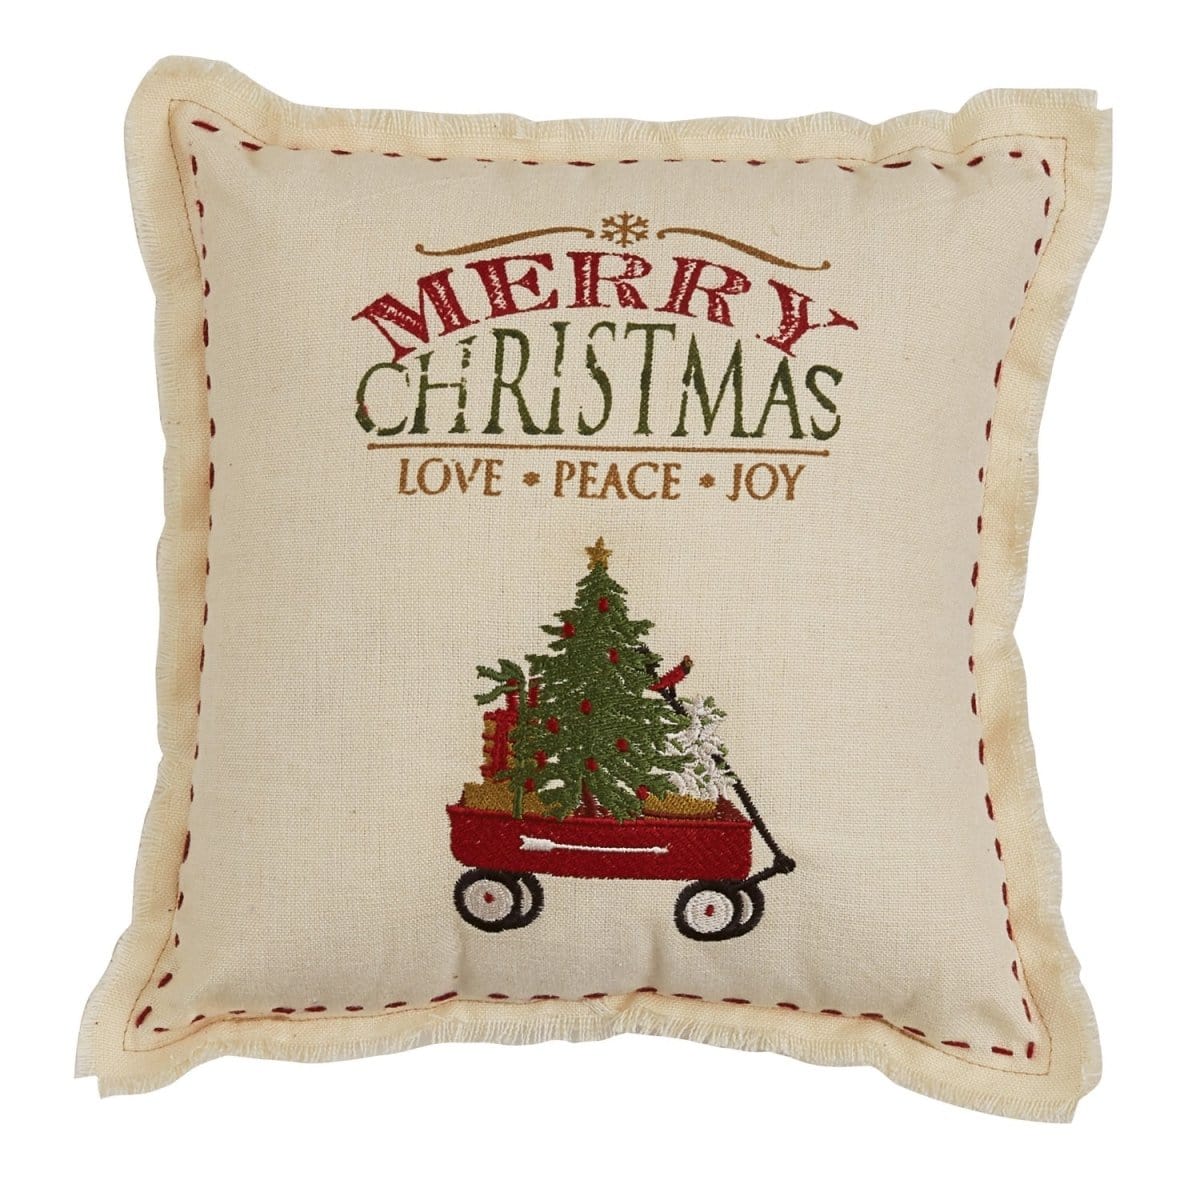 Merry Christmas pillow 10" x 10" Square-Park Designs-The Village Merchant